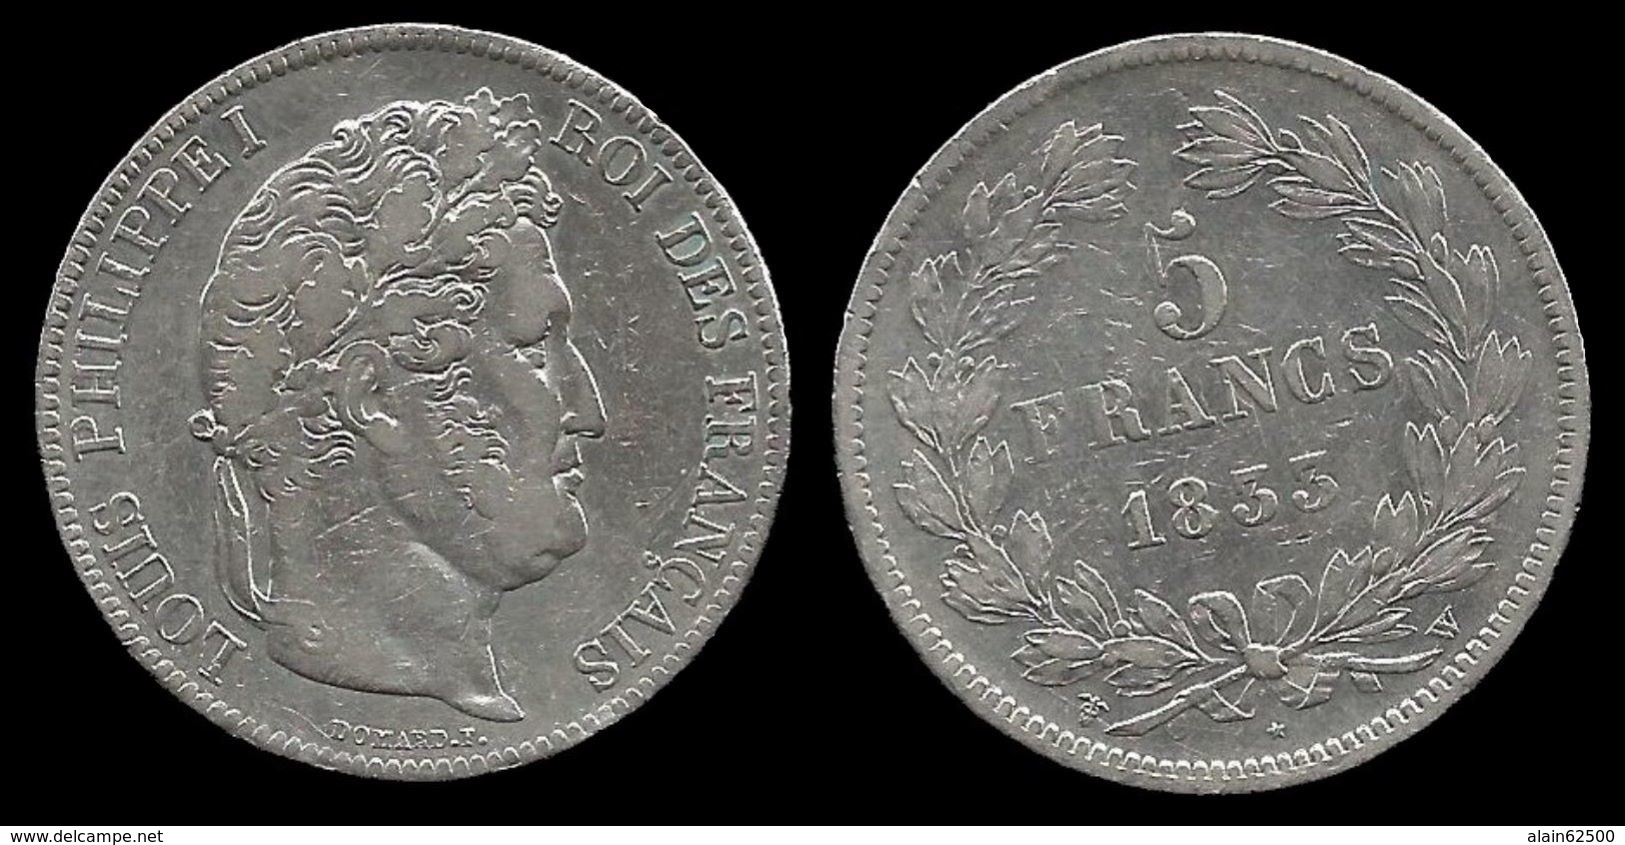 LOUIS - PHILIPPE I . 5 FRANCS . TÊTE LAUREE . 1833 W . ( LILLE ). TRANCHE EN RELIEF . - 5 Francs